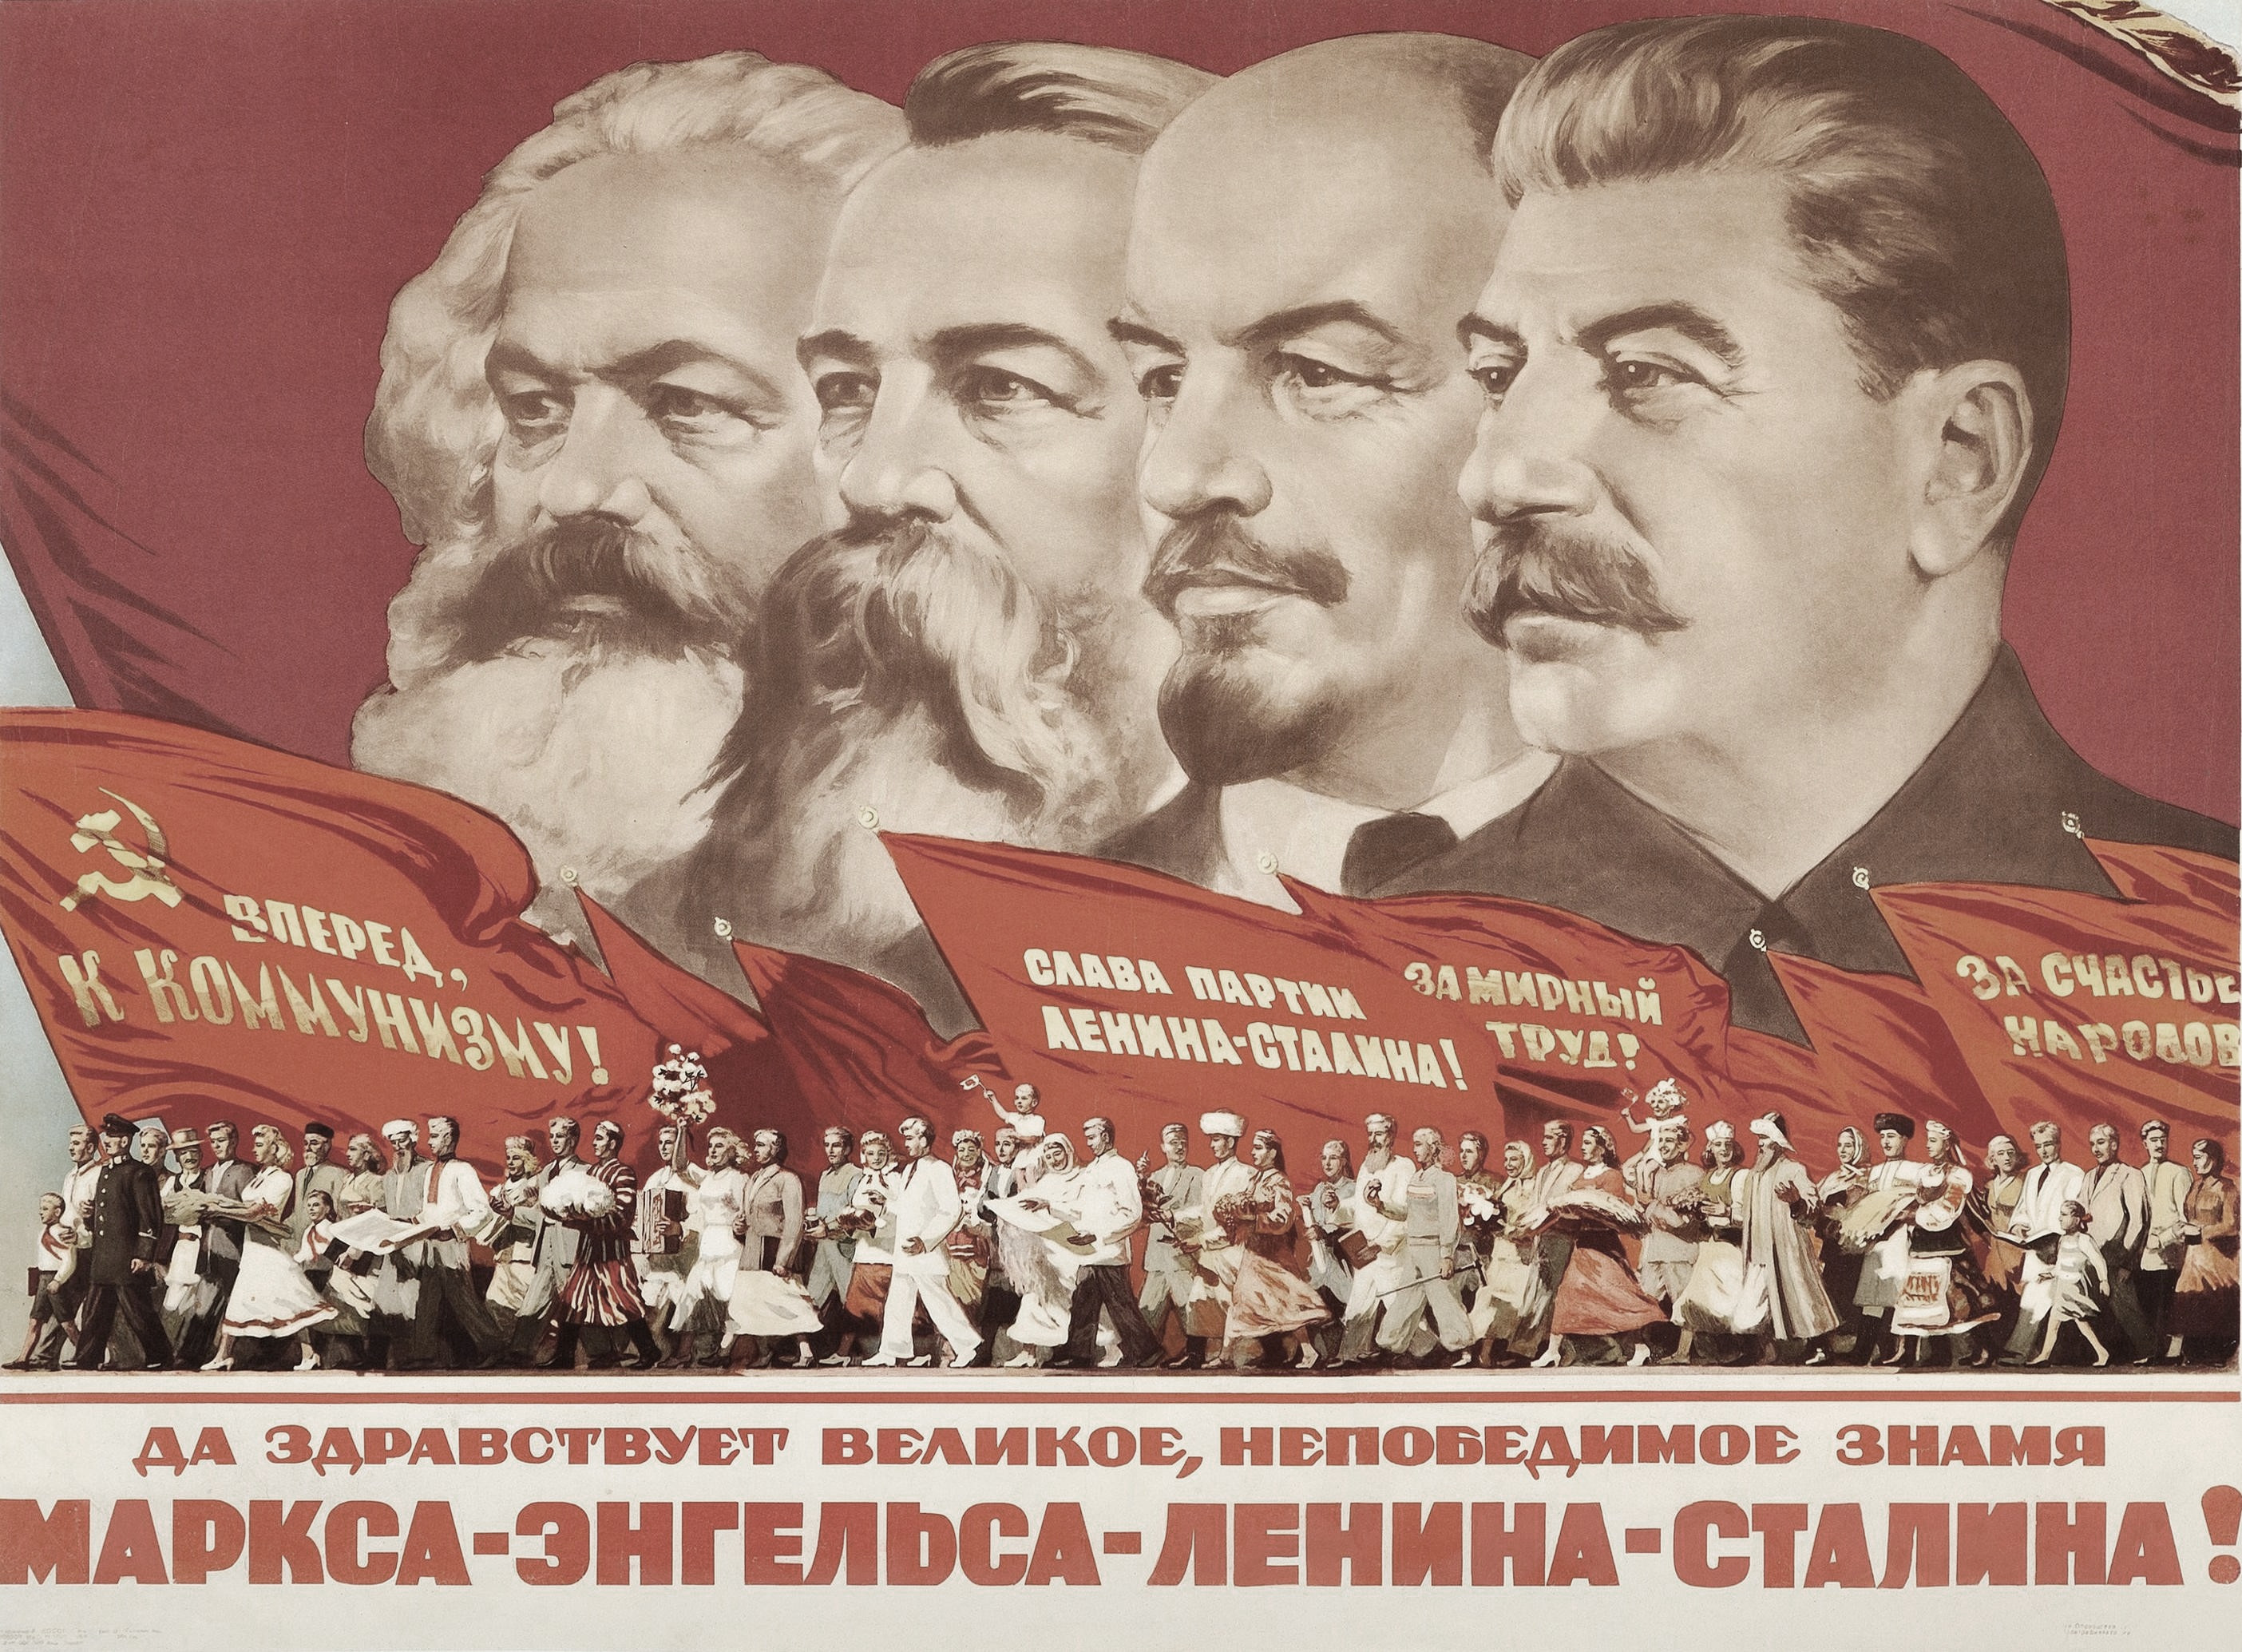 Энгельс ленин сталин. Маркс Энгельс Ленин Сталин плакат. Маркс Энгельс Ленин Сталин Мао Цзэдун. Маркс Энгельс Ленин Сталин Знамя. Да здравствует непобедимое Знамя Маркса-Энгельса-Ленина-Сталина.